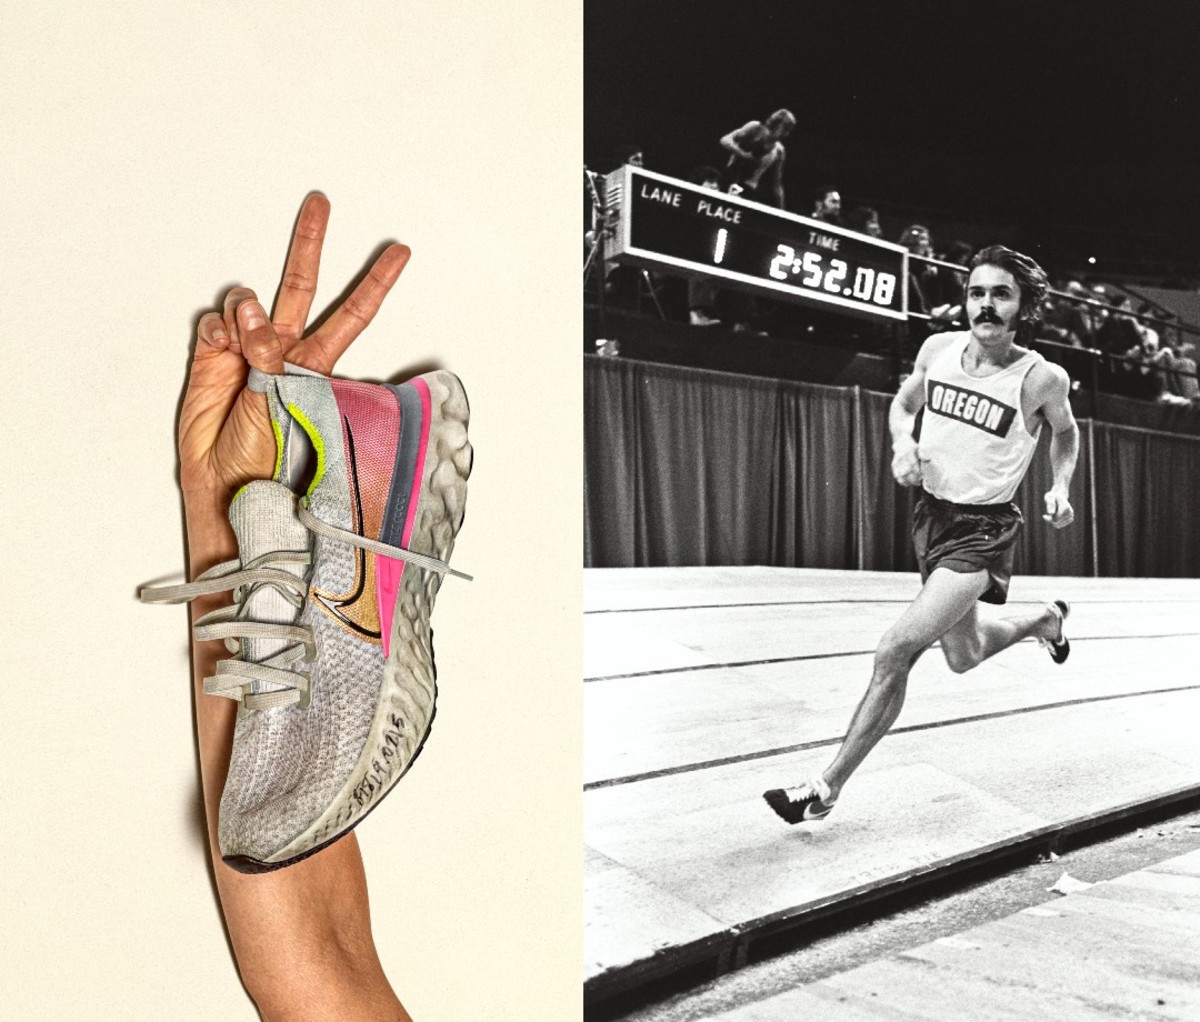 Das Bild links zeigt häufig getragene Laufsneaker in den Händen einer Person;  rechts zeigt Läufer beim Sprinten auf der Strecke